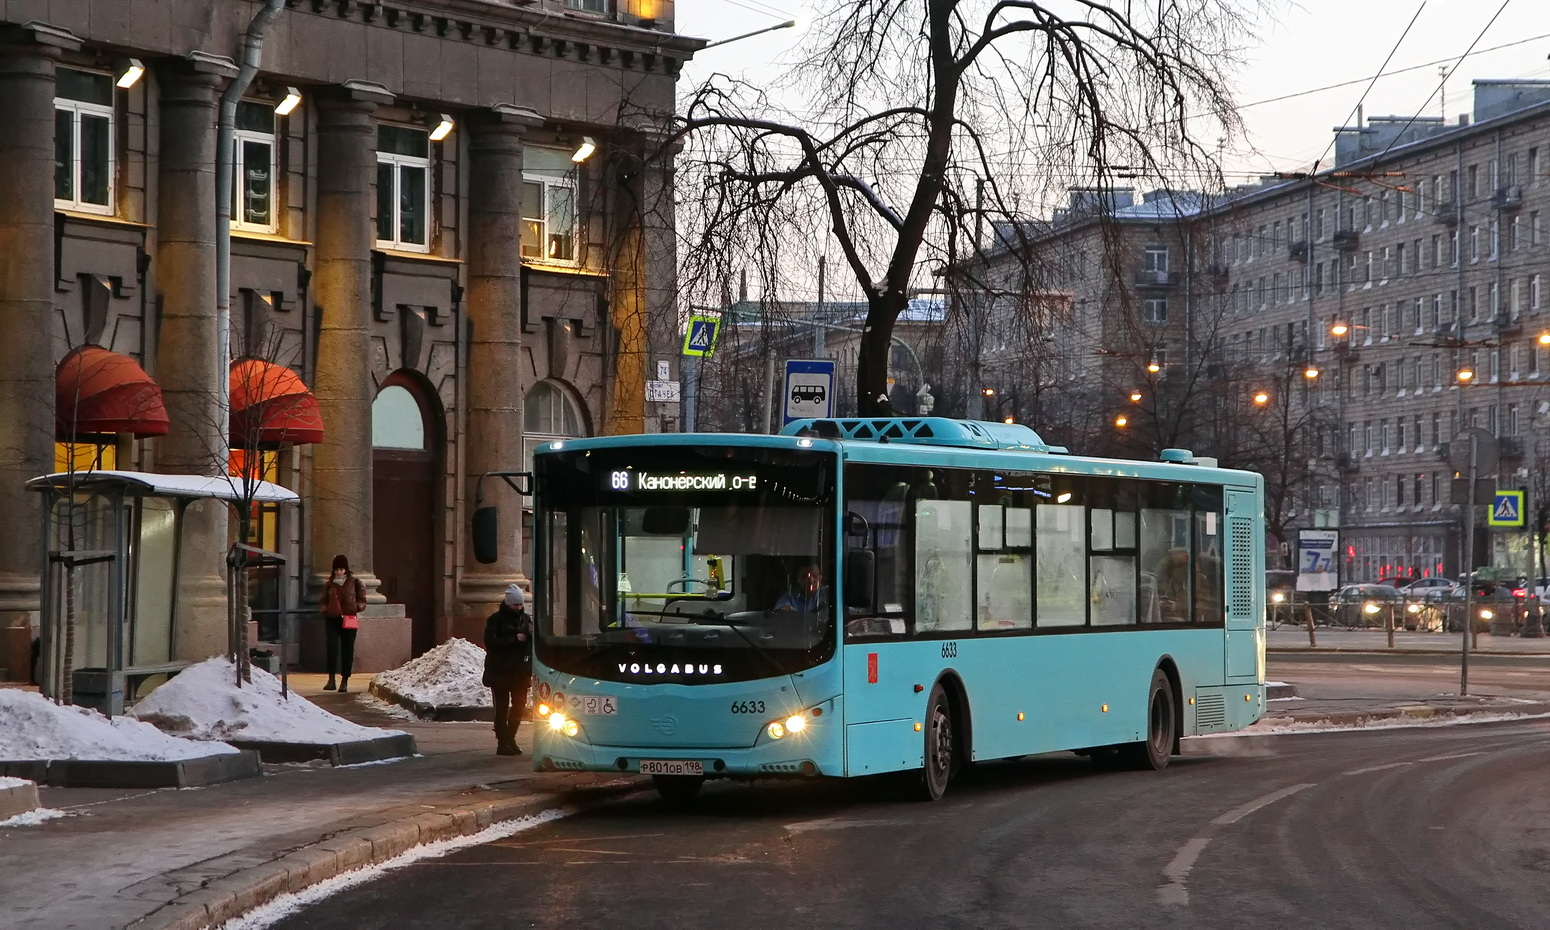 Sanktpēterburga, Volgabus-5270.G2 (LNG) № 6633